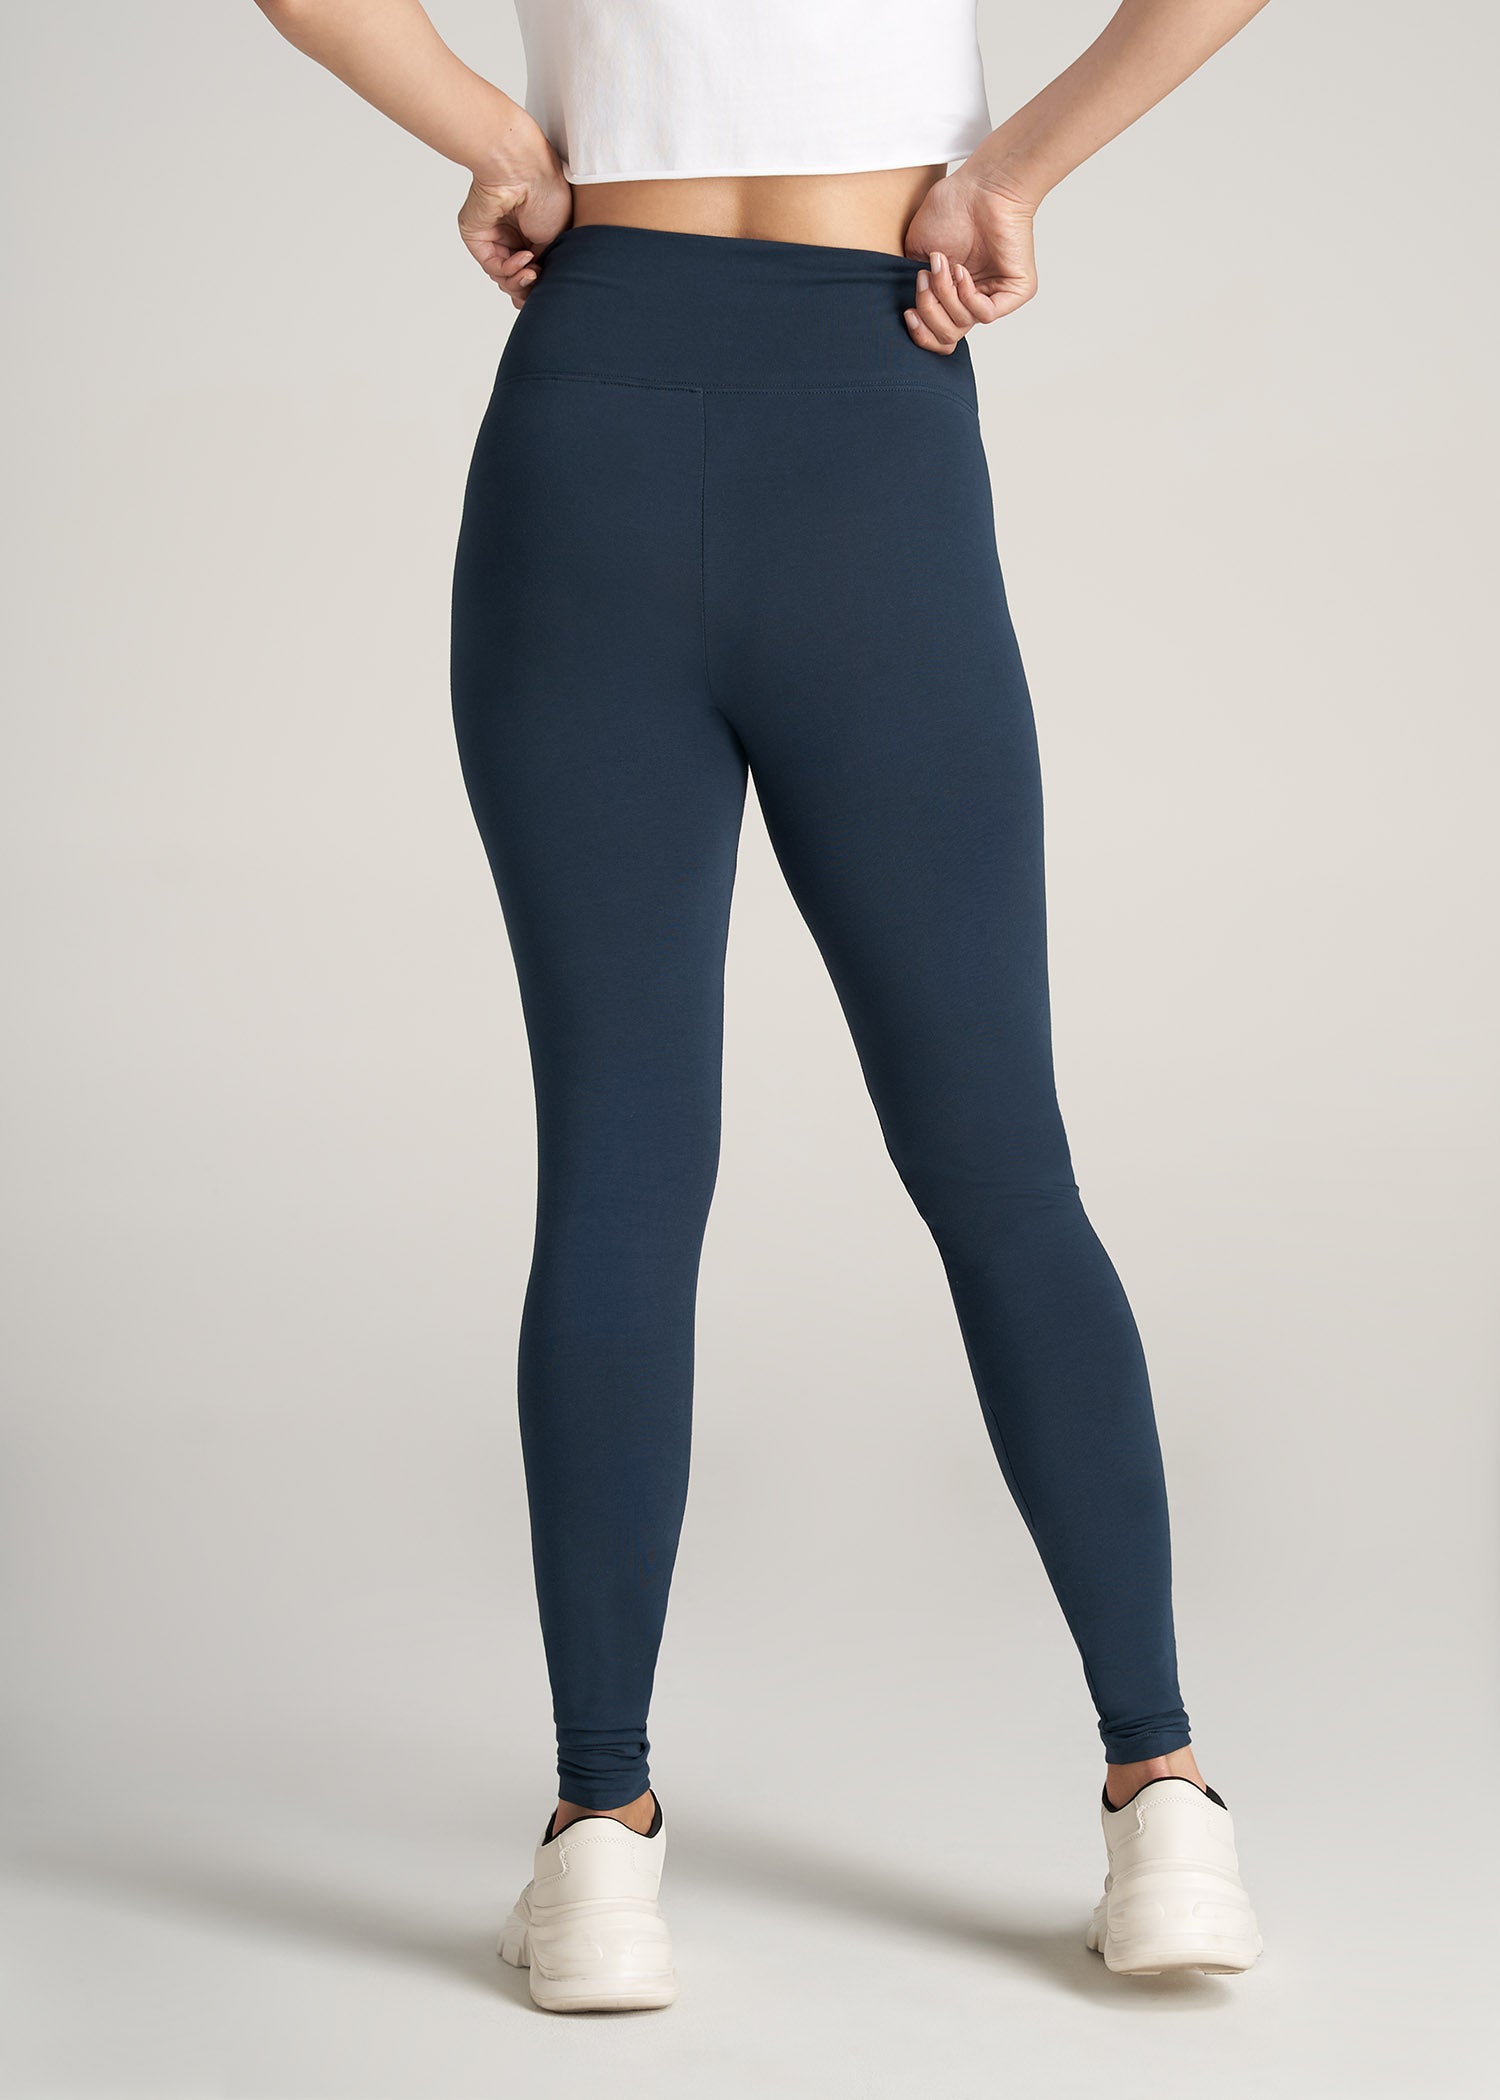 navy blue lululemon leggings